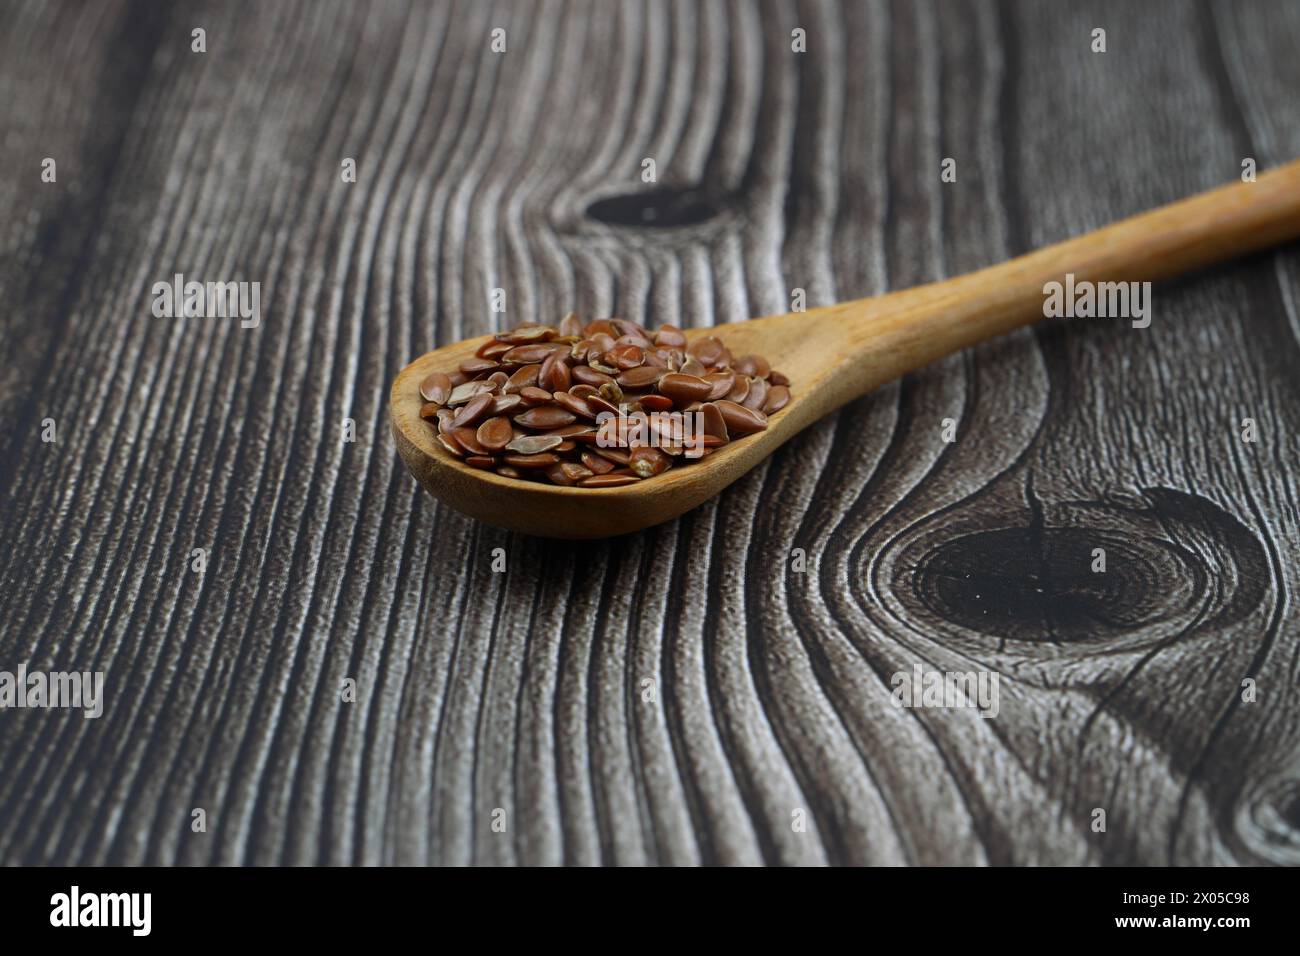 Graines de lin. Poudre de lin dans une cuillère en bois. Se tenir sur un fond en bois. Banque D'Images